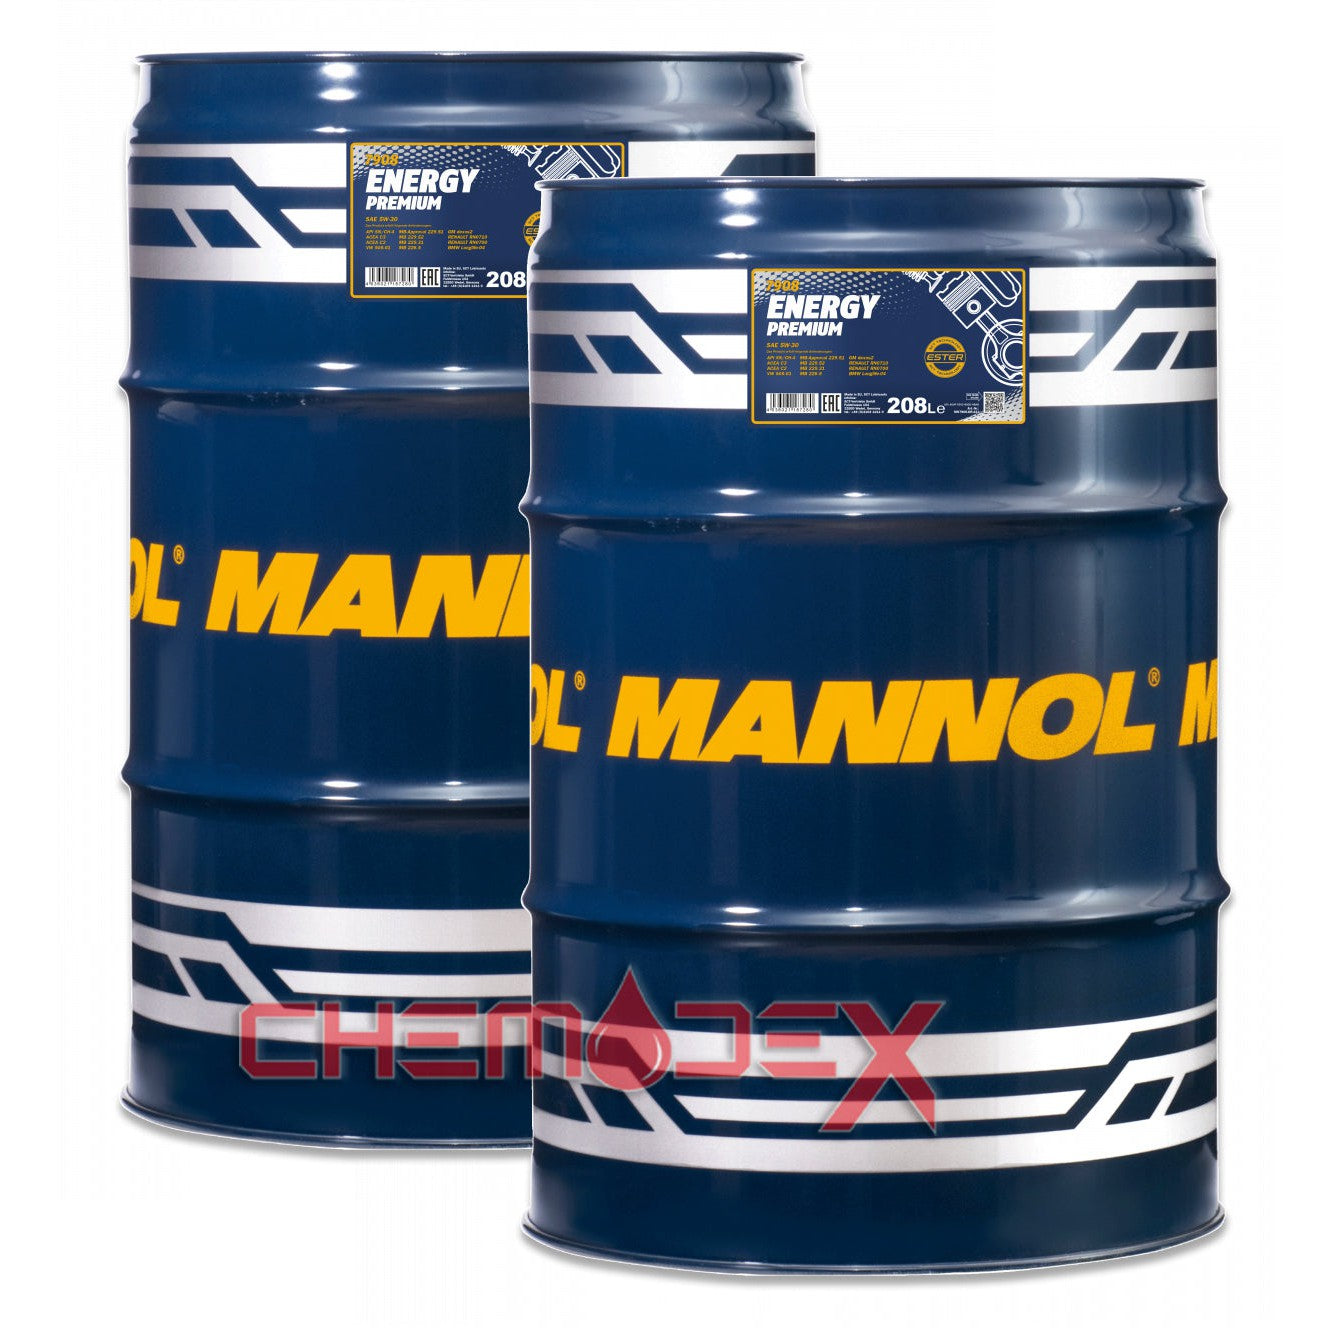 2 x MANNOL Energy Premium C2/C3 SAE 5W30 208L Fully Synthetic Premium